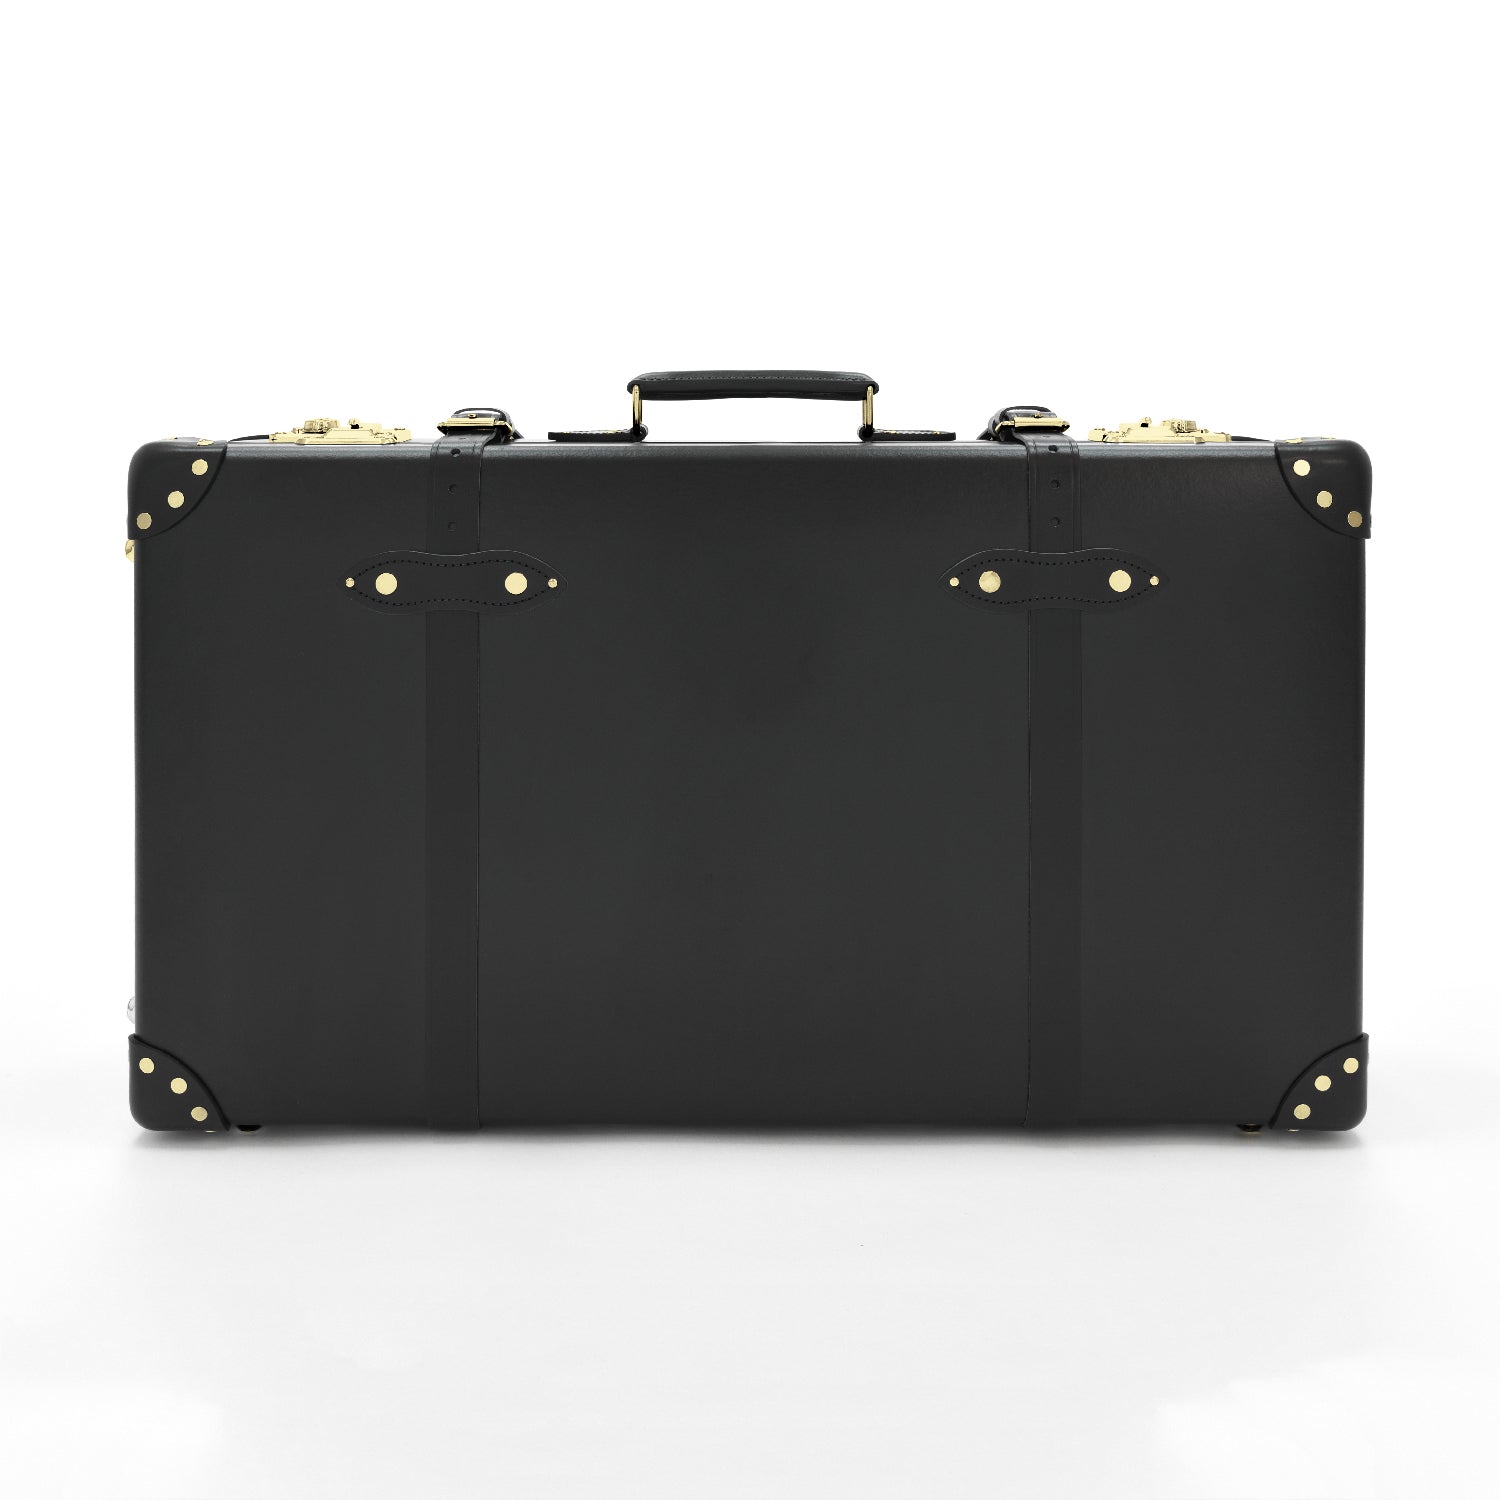 センテナリー · ラージスーツケース | ブラック&ゴールド